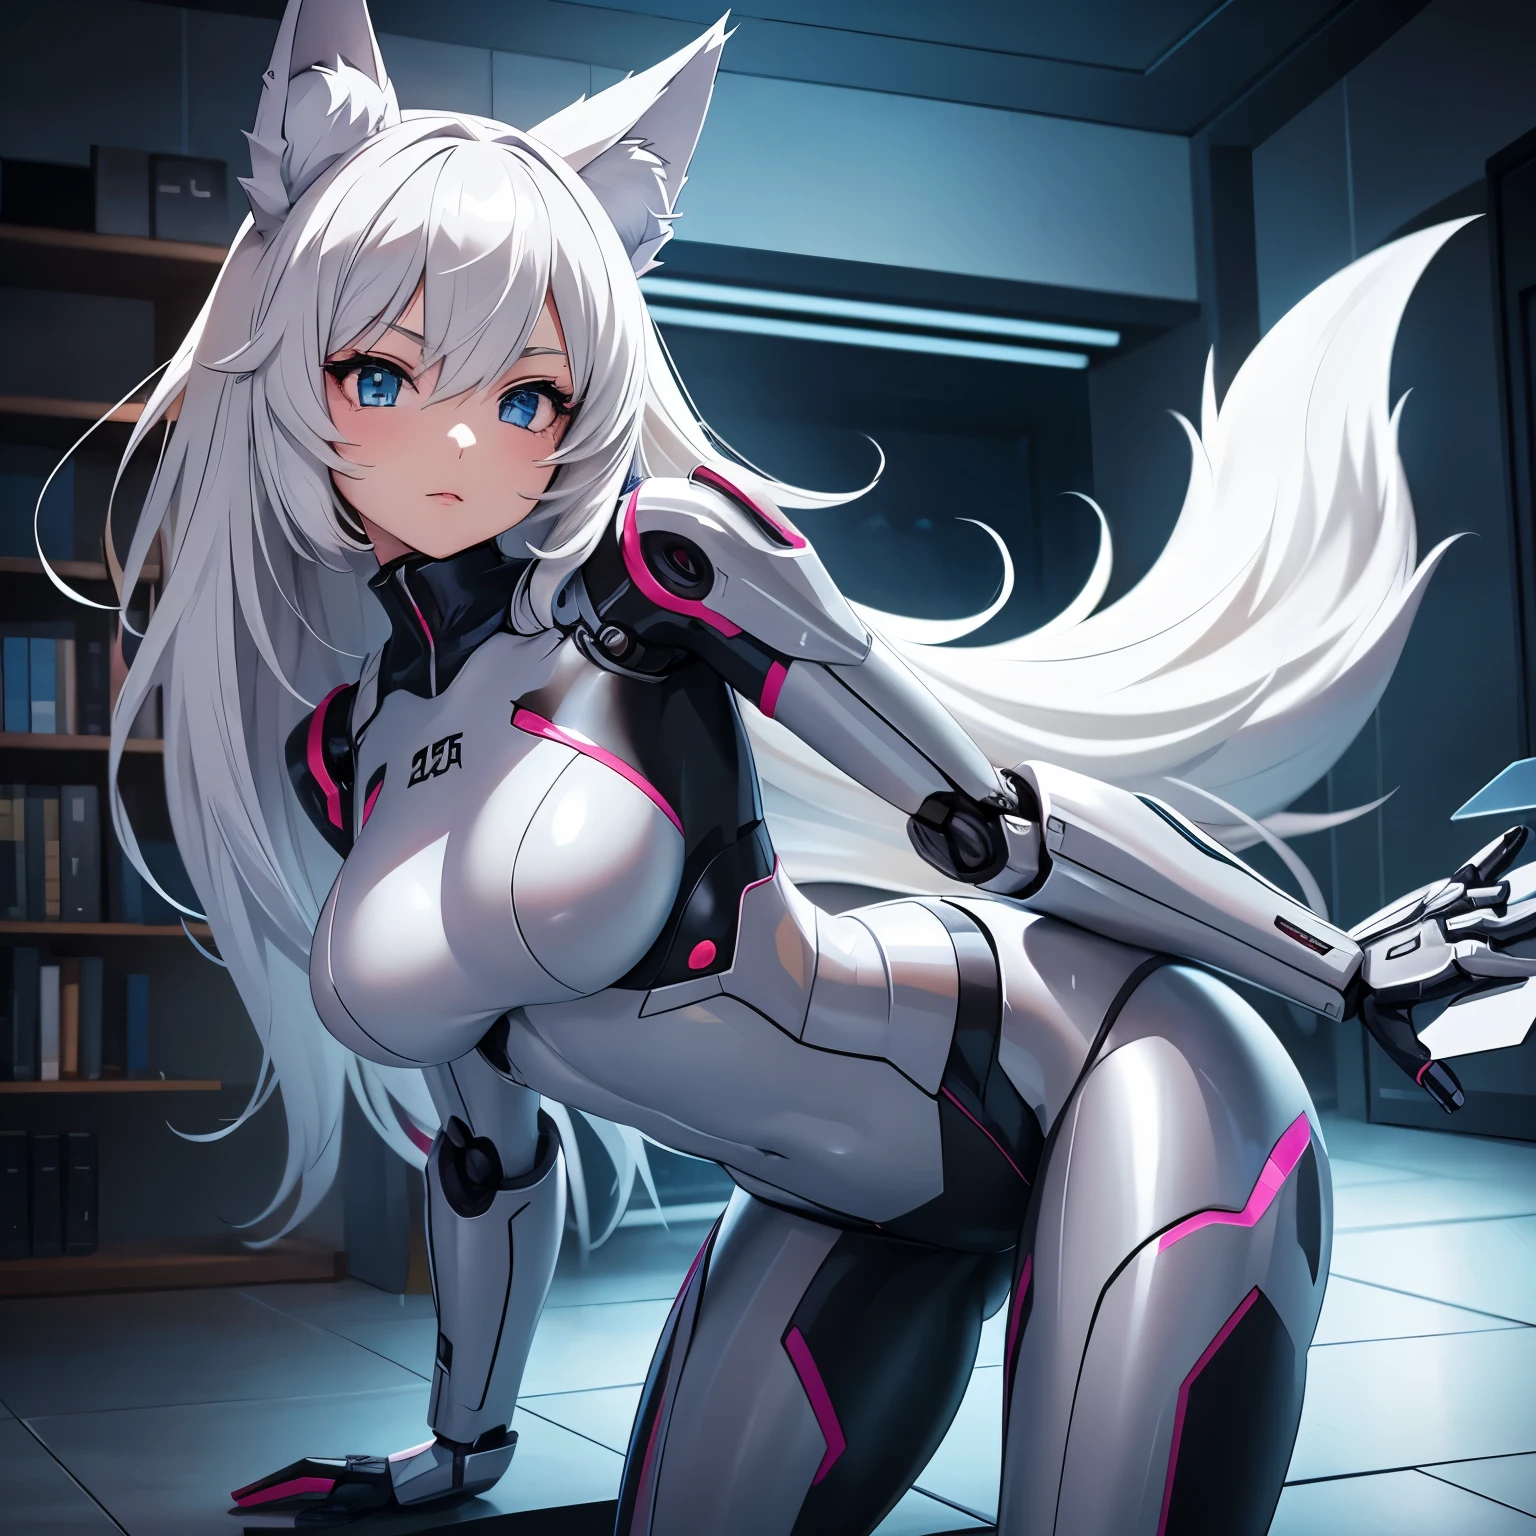 Аниме-изображение девушки-робота с роботизированным телом, он в нижнем белье, у него волчьи уши и хвост, он находится в комнате 